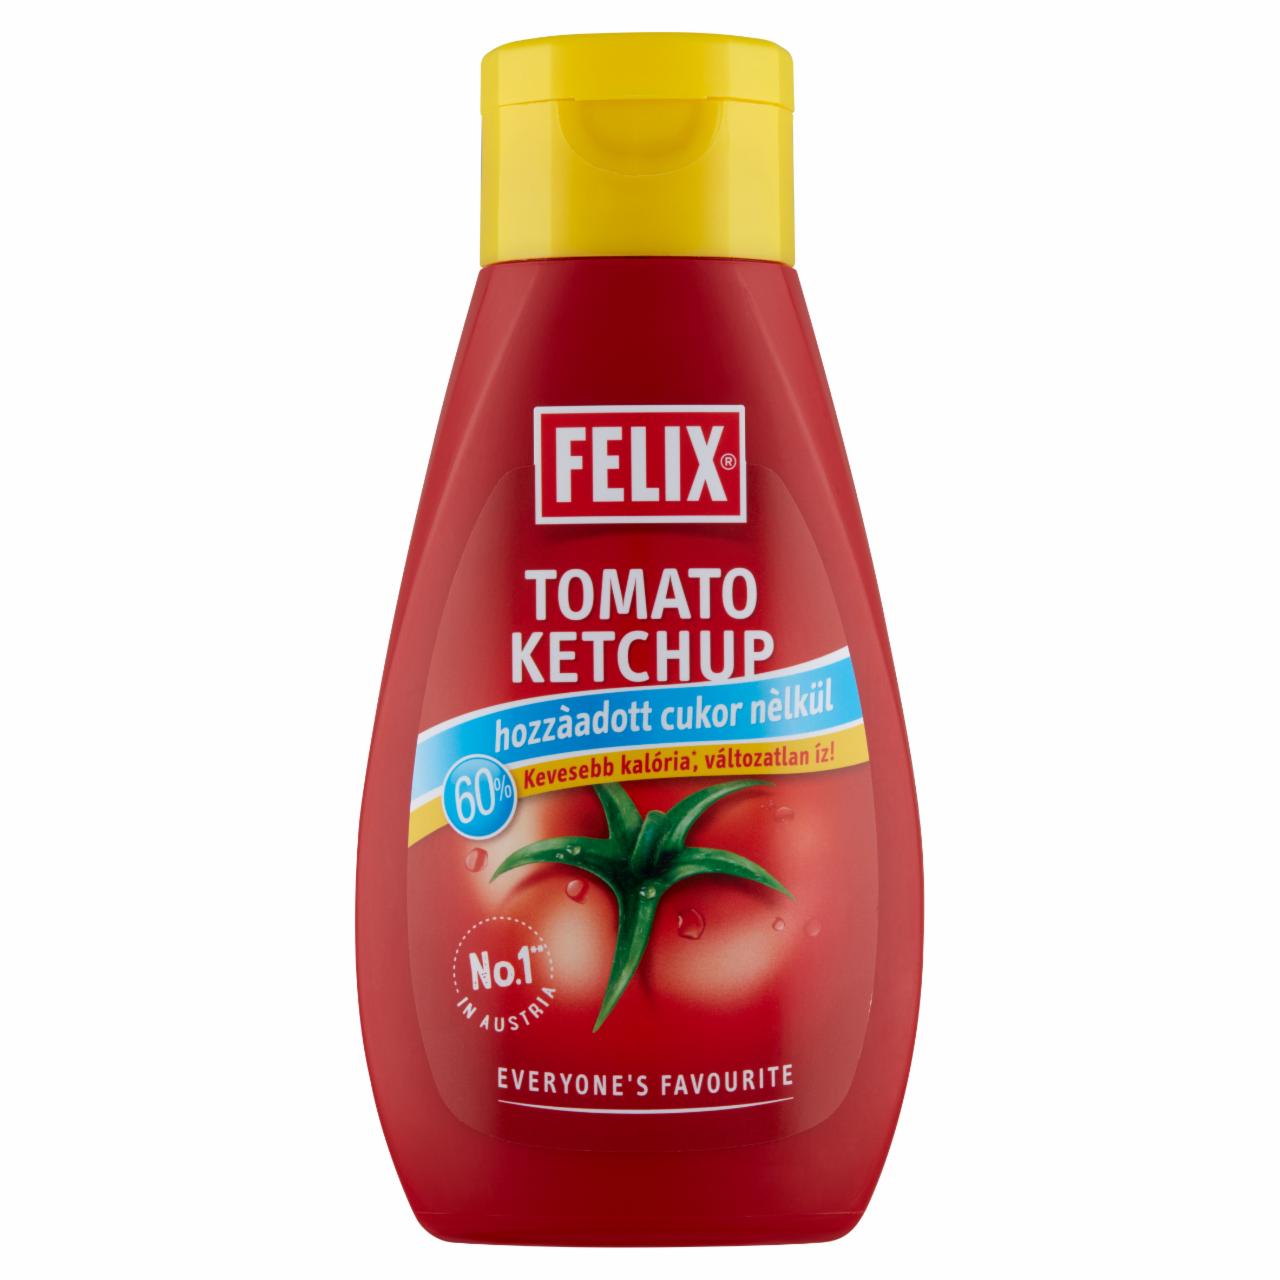 Képek - Felix ketchup hozzáadott cukor nélkül, édesítőszerrel édesítve 435 g